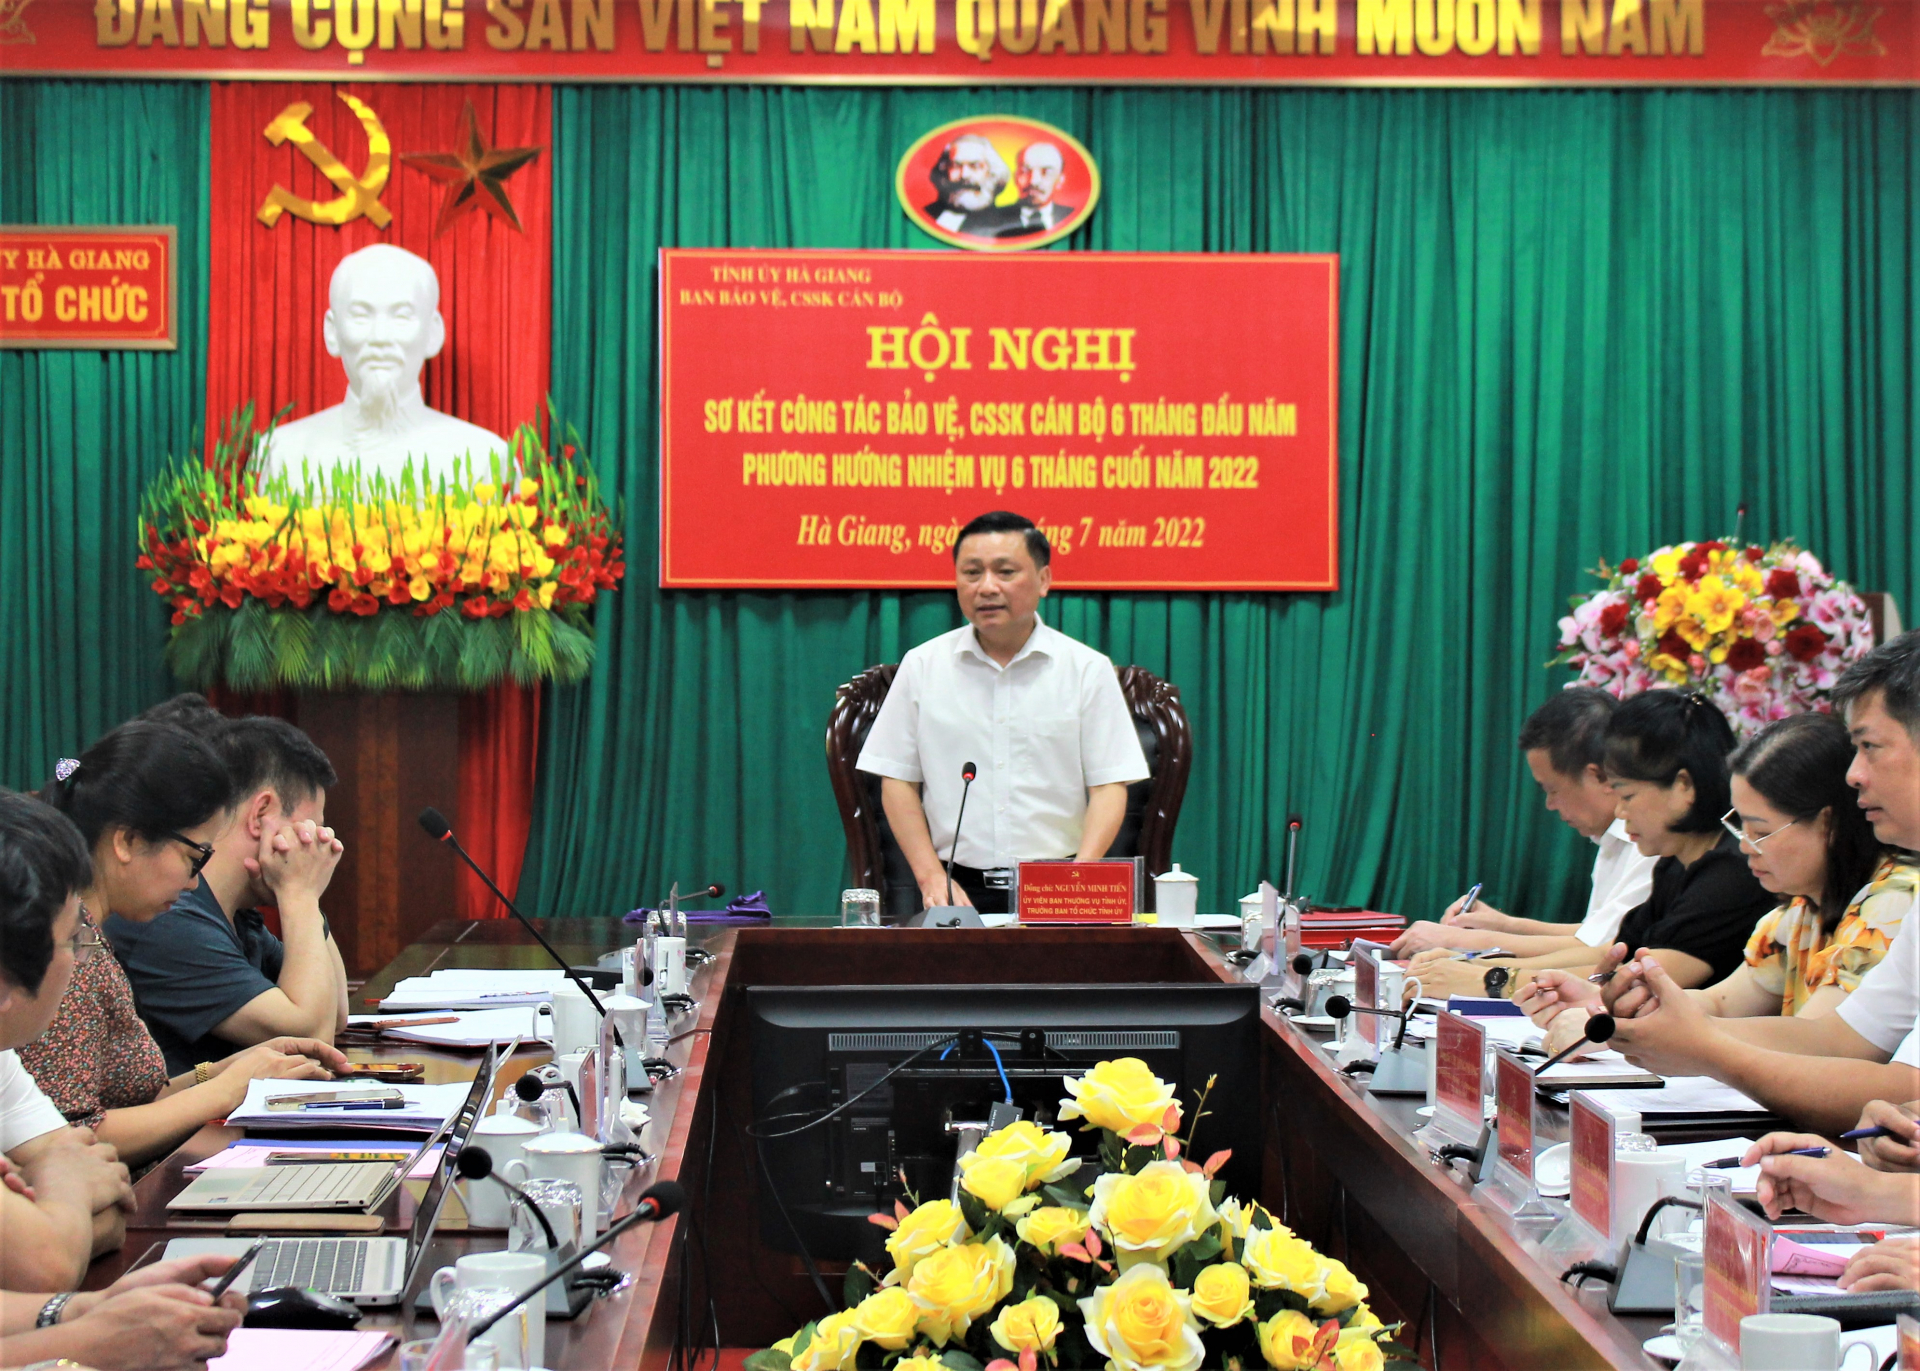 Đồng chí Nguyễn Minh Tiến, Trưởng ban Tổ chức Tỉnh ủy, Trưởng Ban BVCSSK cán bộ tỉnh kết luận hội nghị.